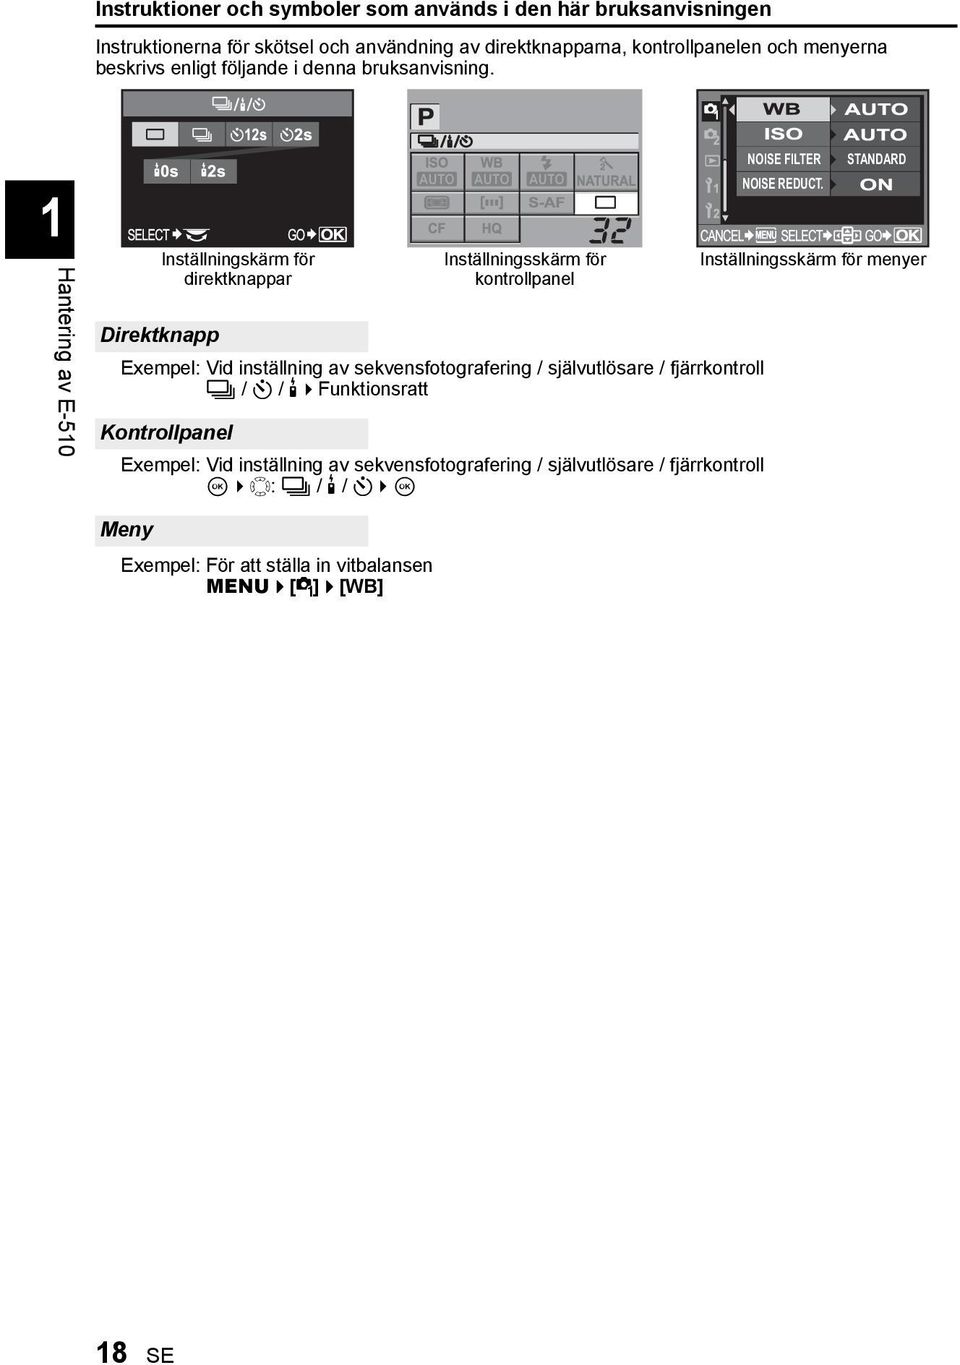 STANDARD 1Hantering av E-510 Direktknapp Inställningskärm för direktknappar Exempel: Vid inställning av sekvensfotografering / självutlösare / fjärrkontroll j / Y